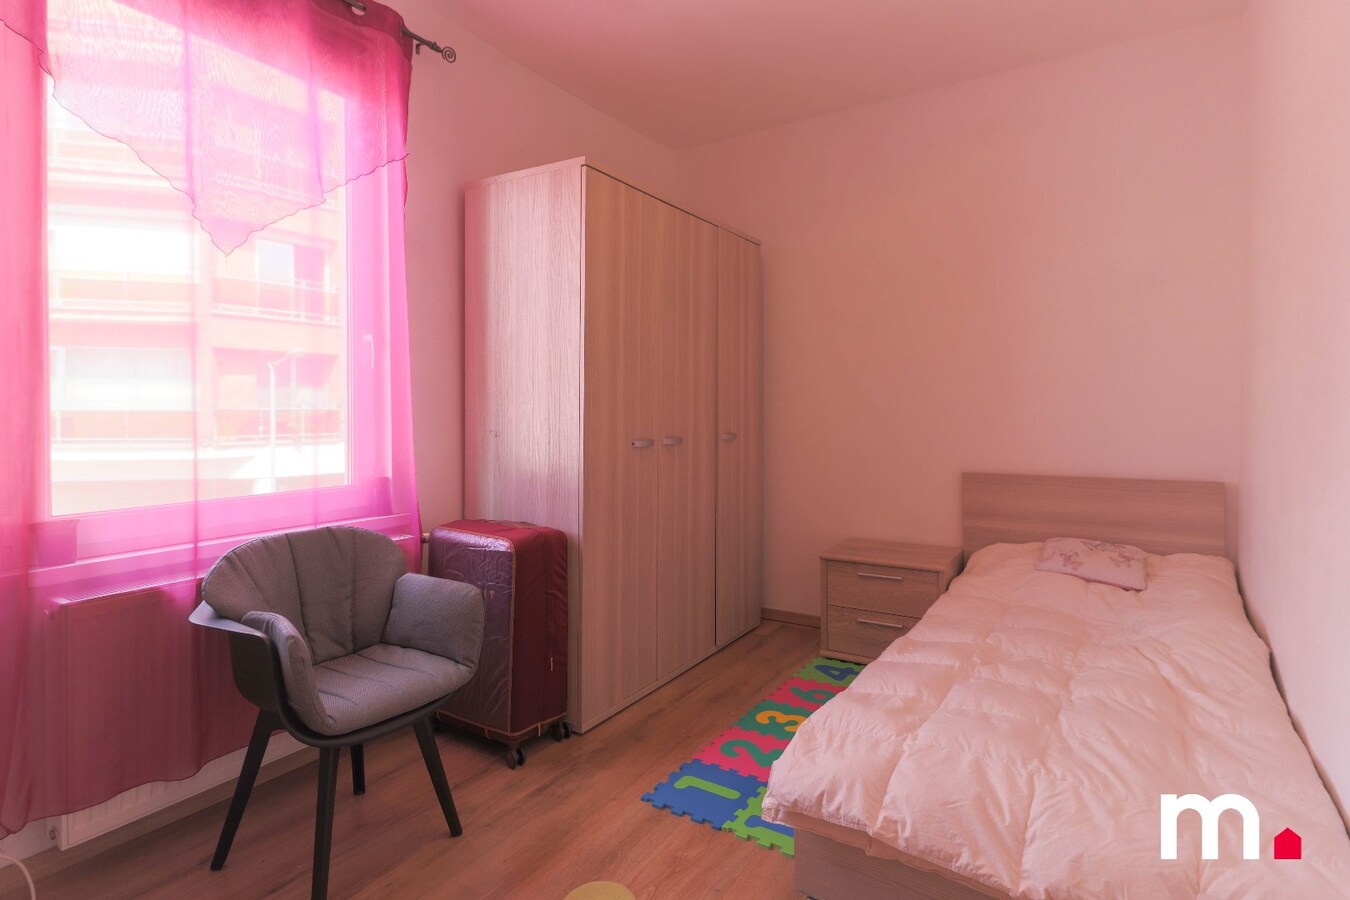 Goed gelegen woning met 6 slaapkamers nabij het centrum van Kortrijk 